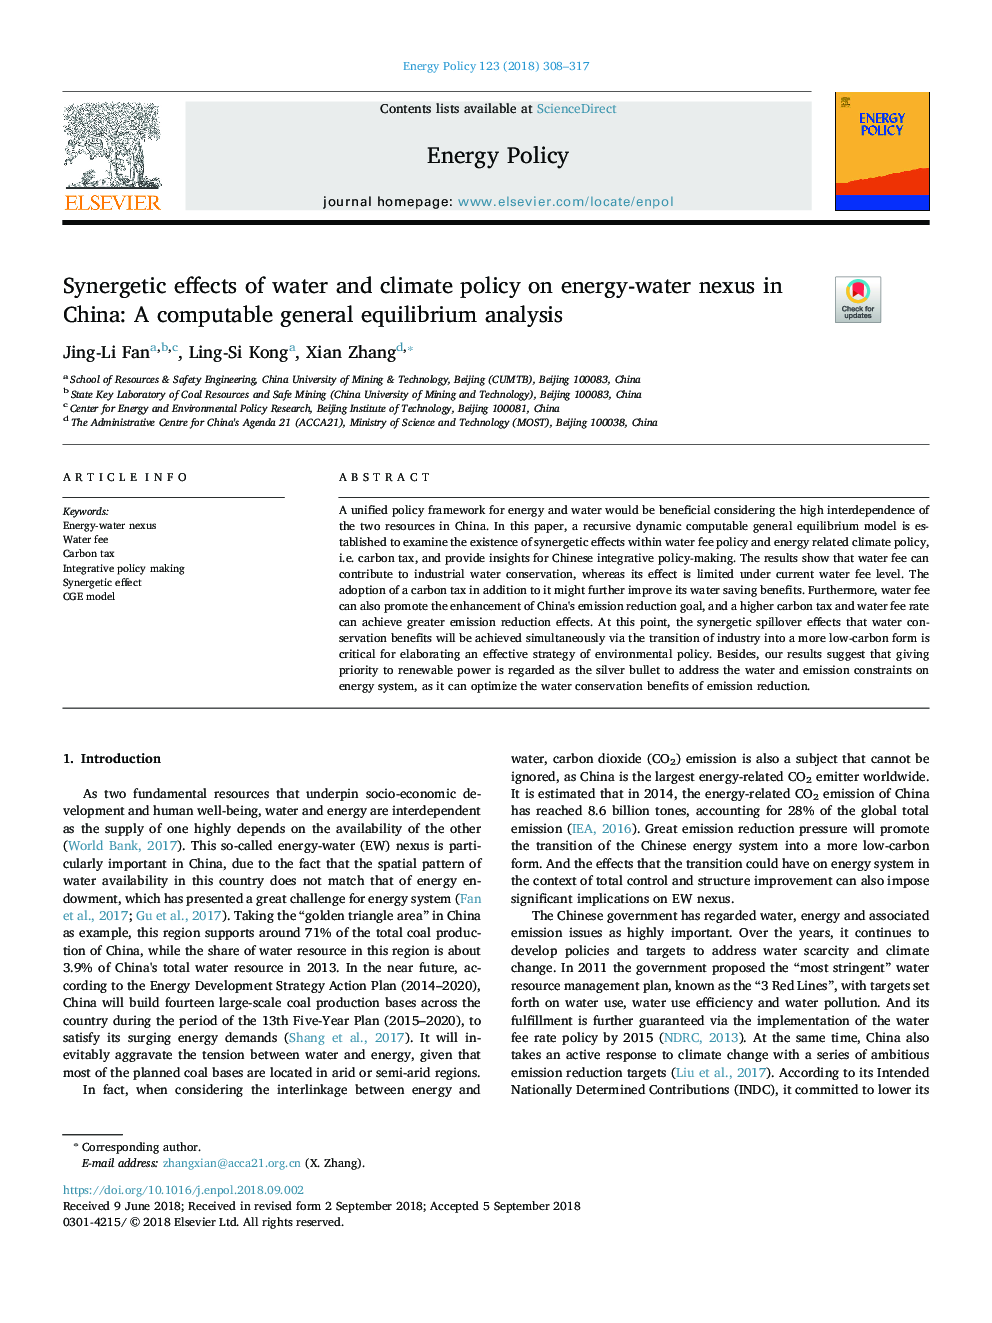 اثرات همگرا سیاست آب و هوا و آب و هوا در ارتباطات انرژی و آب در چین: یک تحلیل تعادل عمومی محاسبه